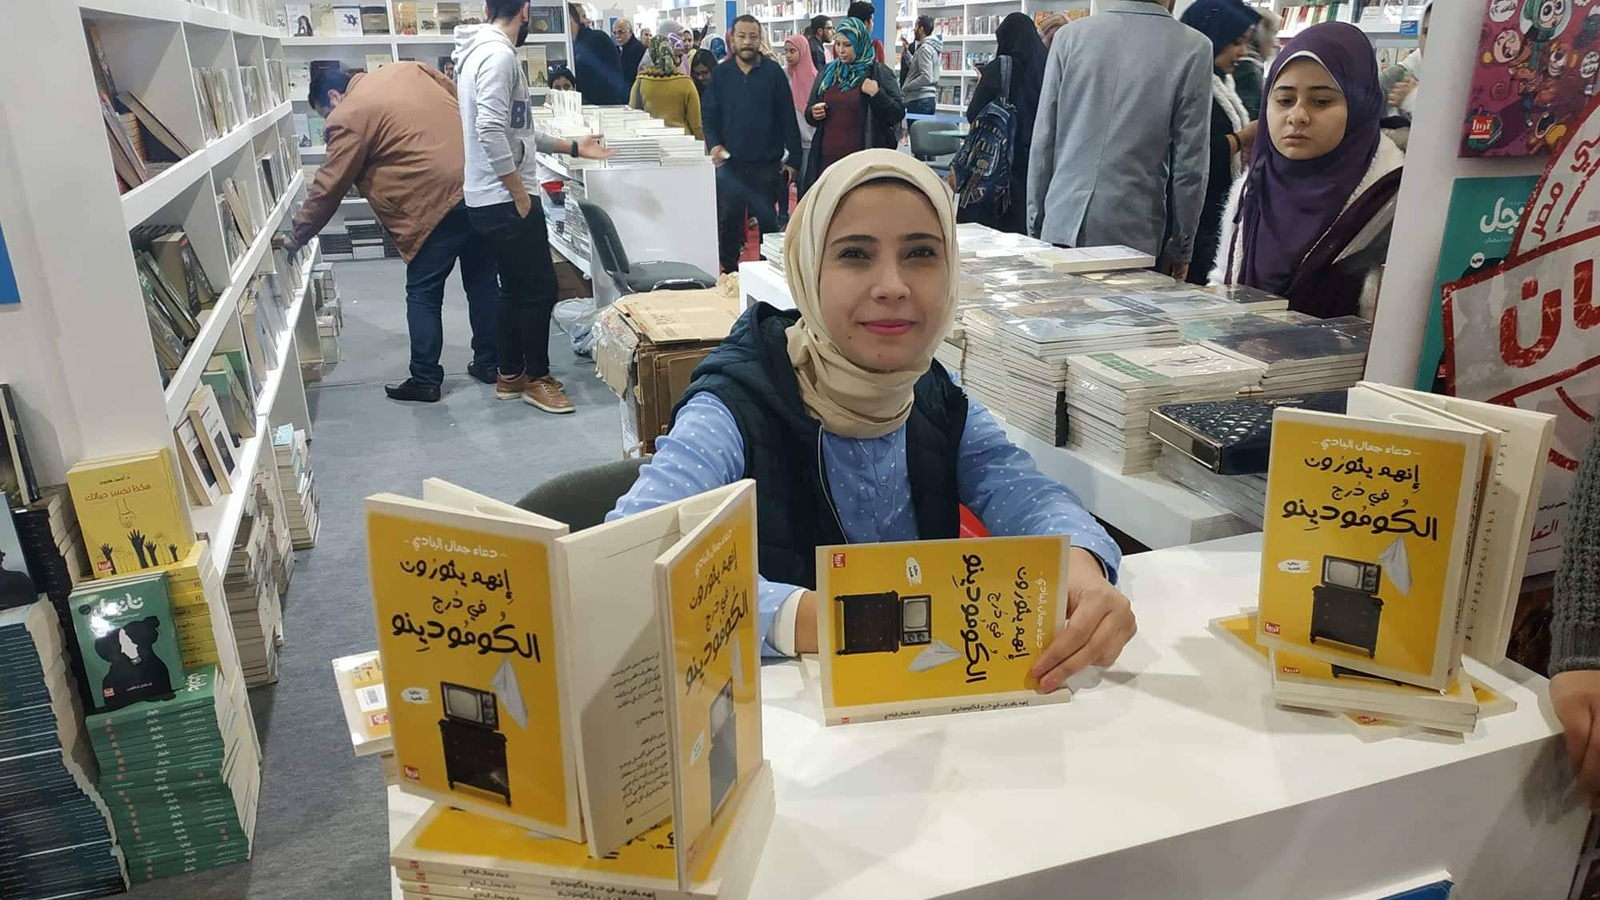 ‪الكاتبة دعاء البادي مع روايتها الأخيرة بمعرض‬ (الجزيرة)